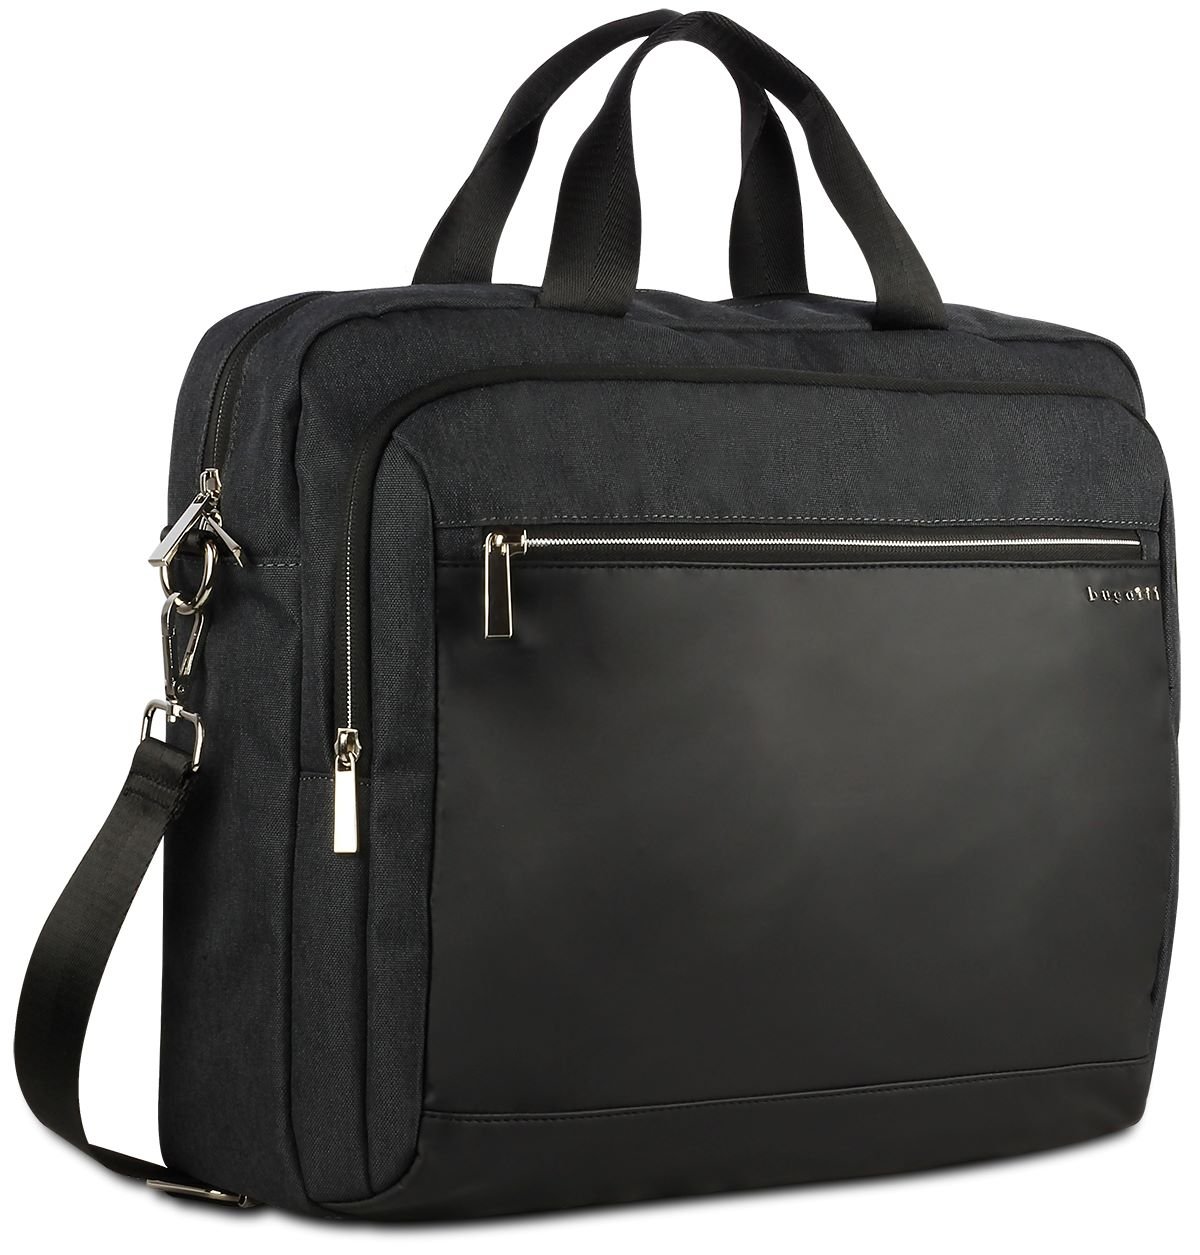 Мужская сумка-портфель Bugatti SERA 49630213* Черный One Size